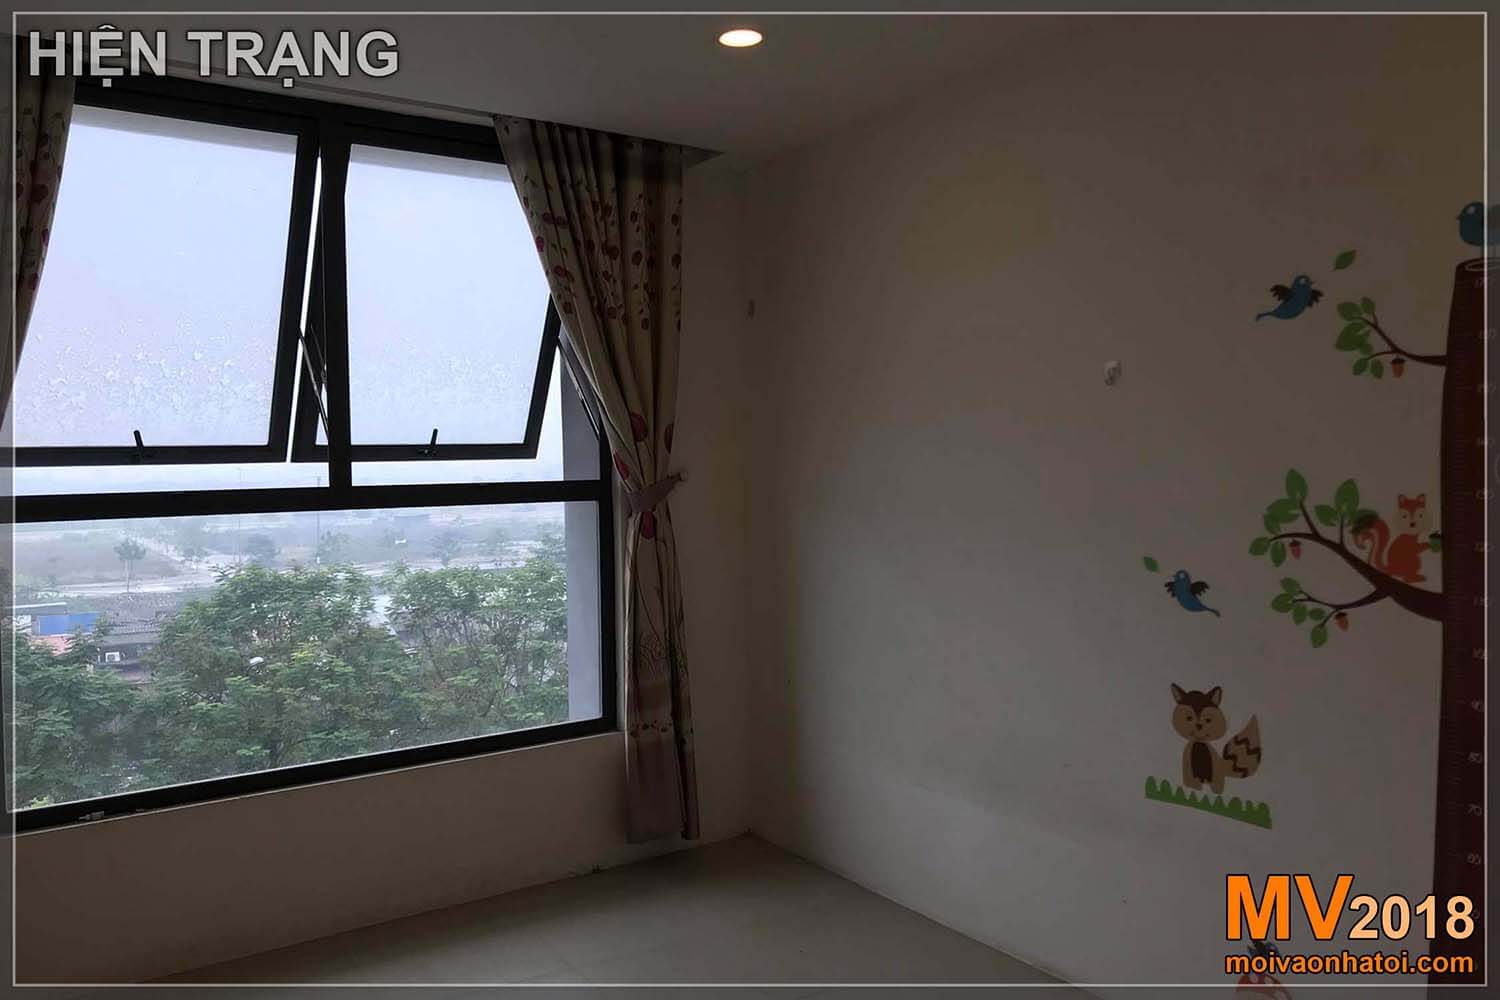 สถานการณ์การสร้างอพาร์ทเม้นท์ในเขตเมือง Dang Xa Gia Lam